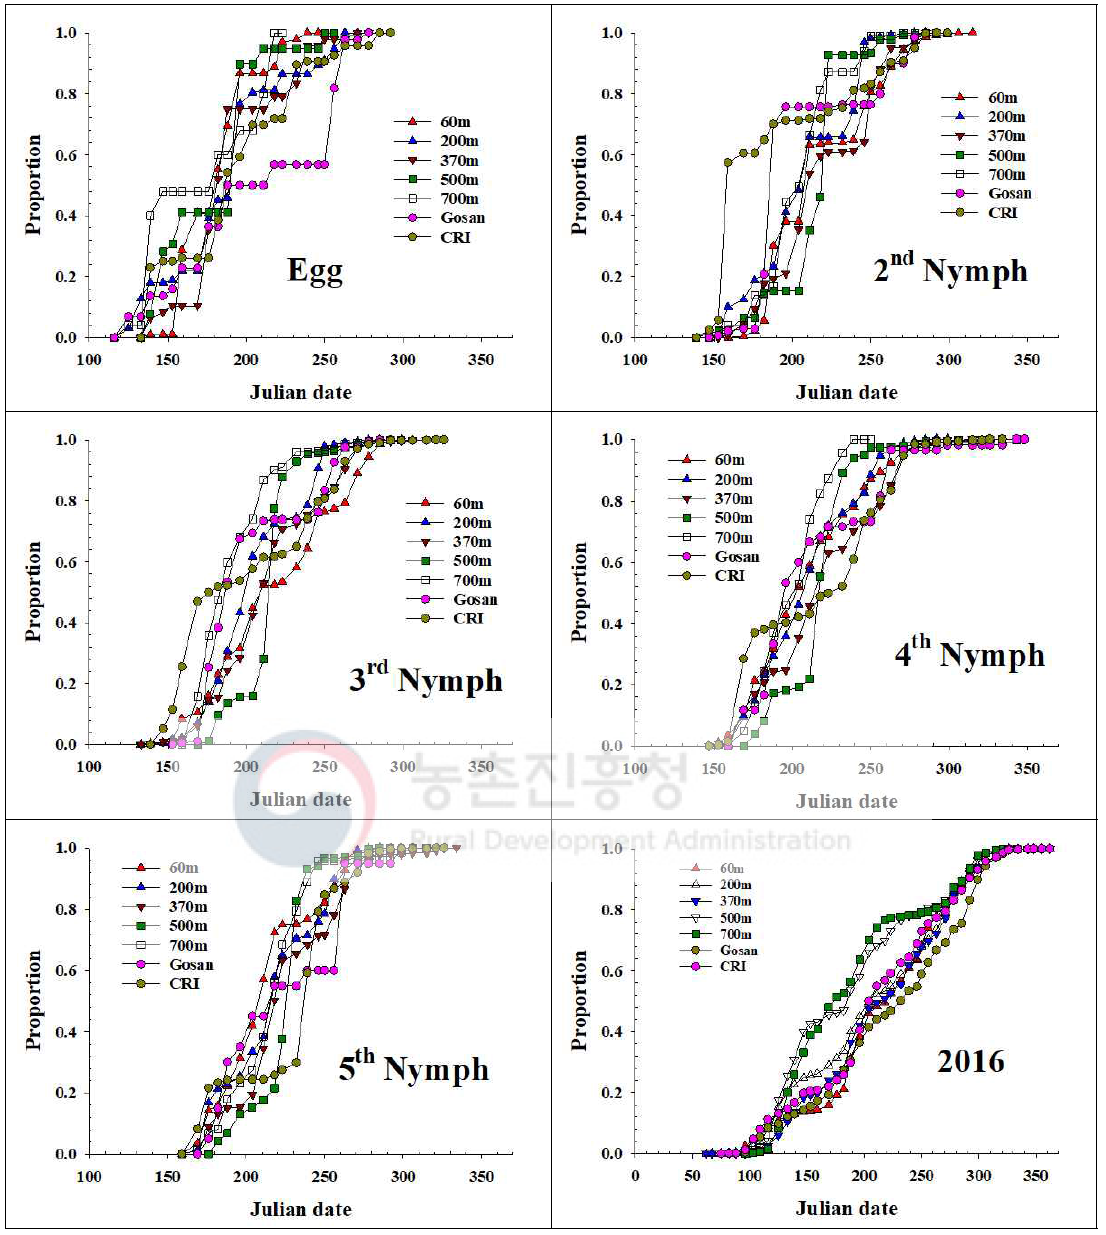 제주지역 톱다리개미허리노린재 발육단계별 개체수 누적증가 지역간 비교(2016)